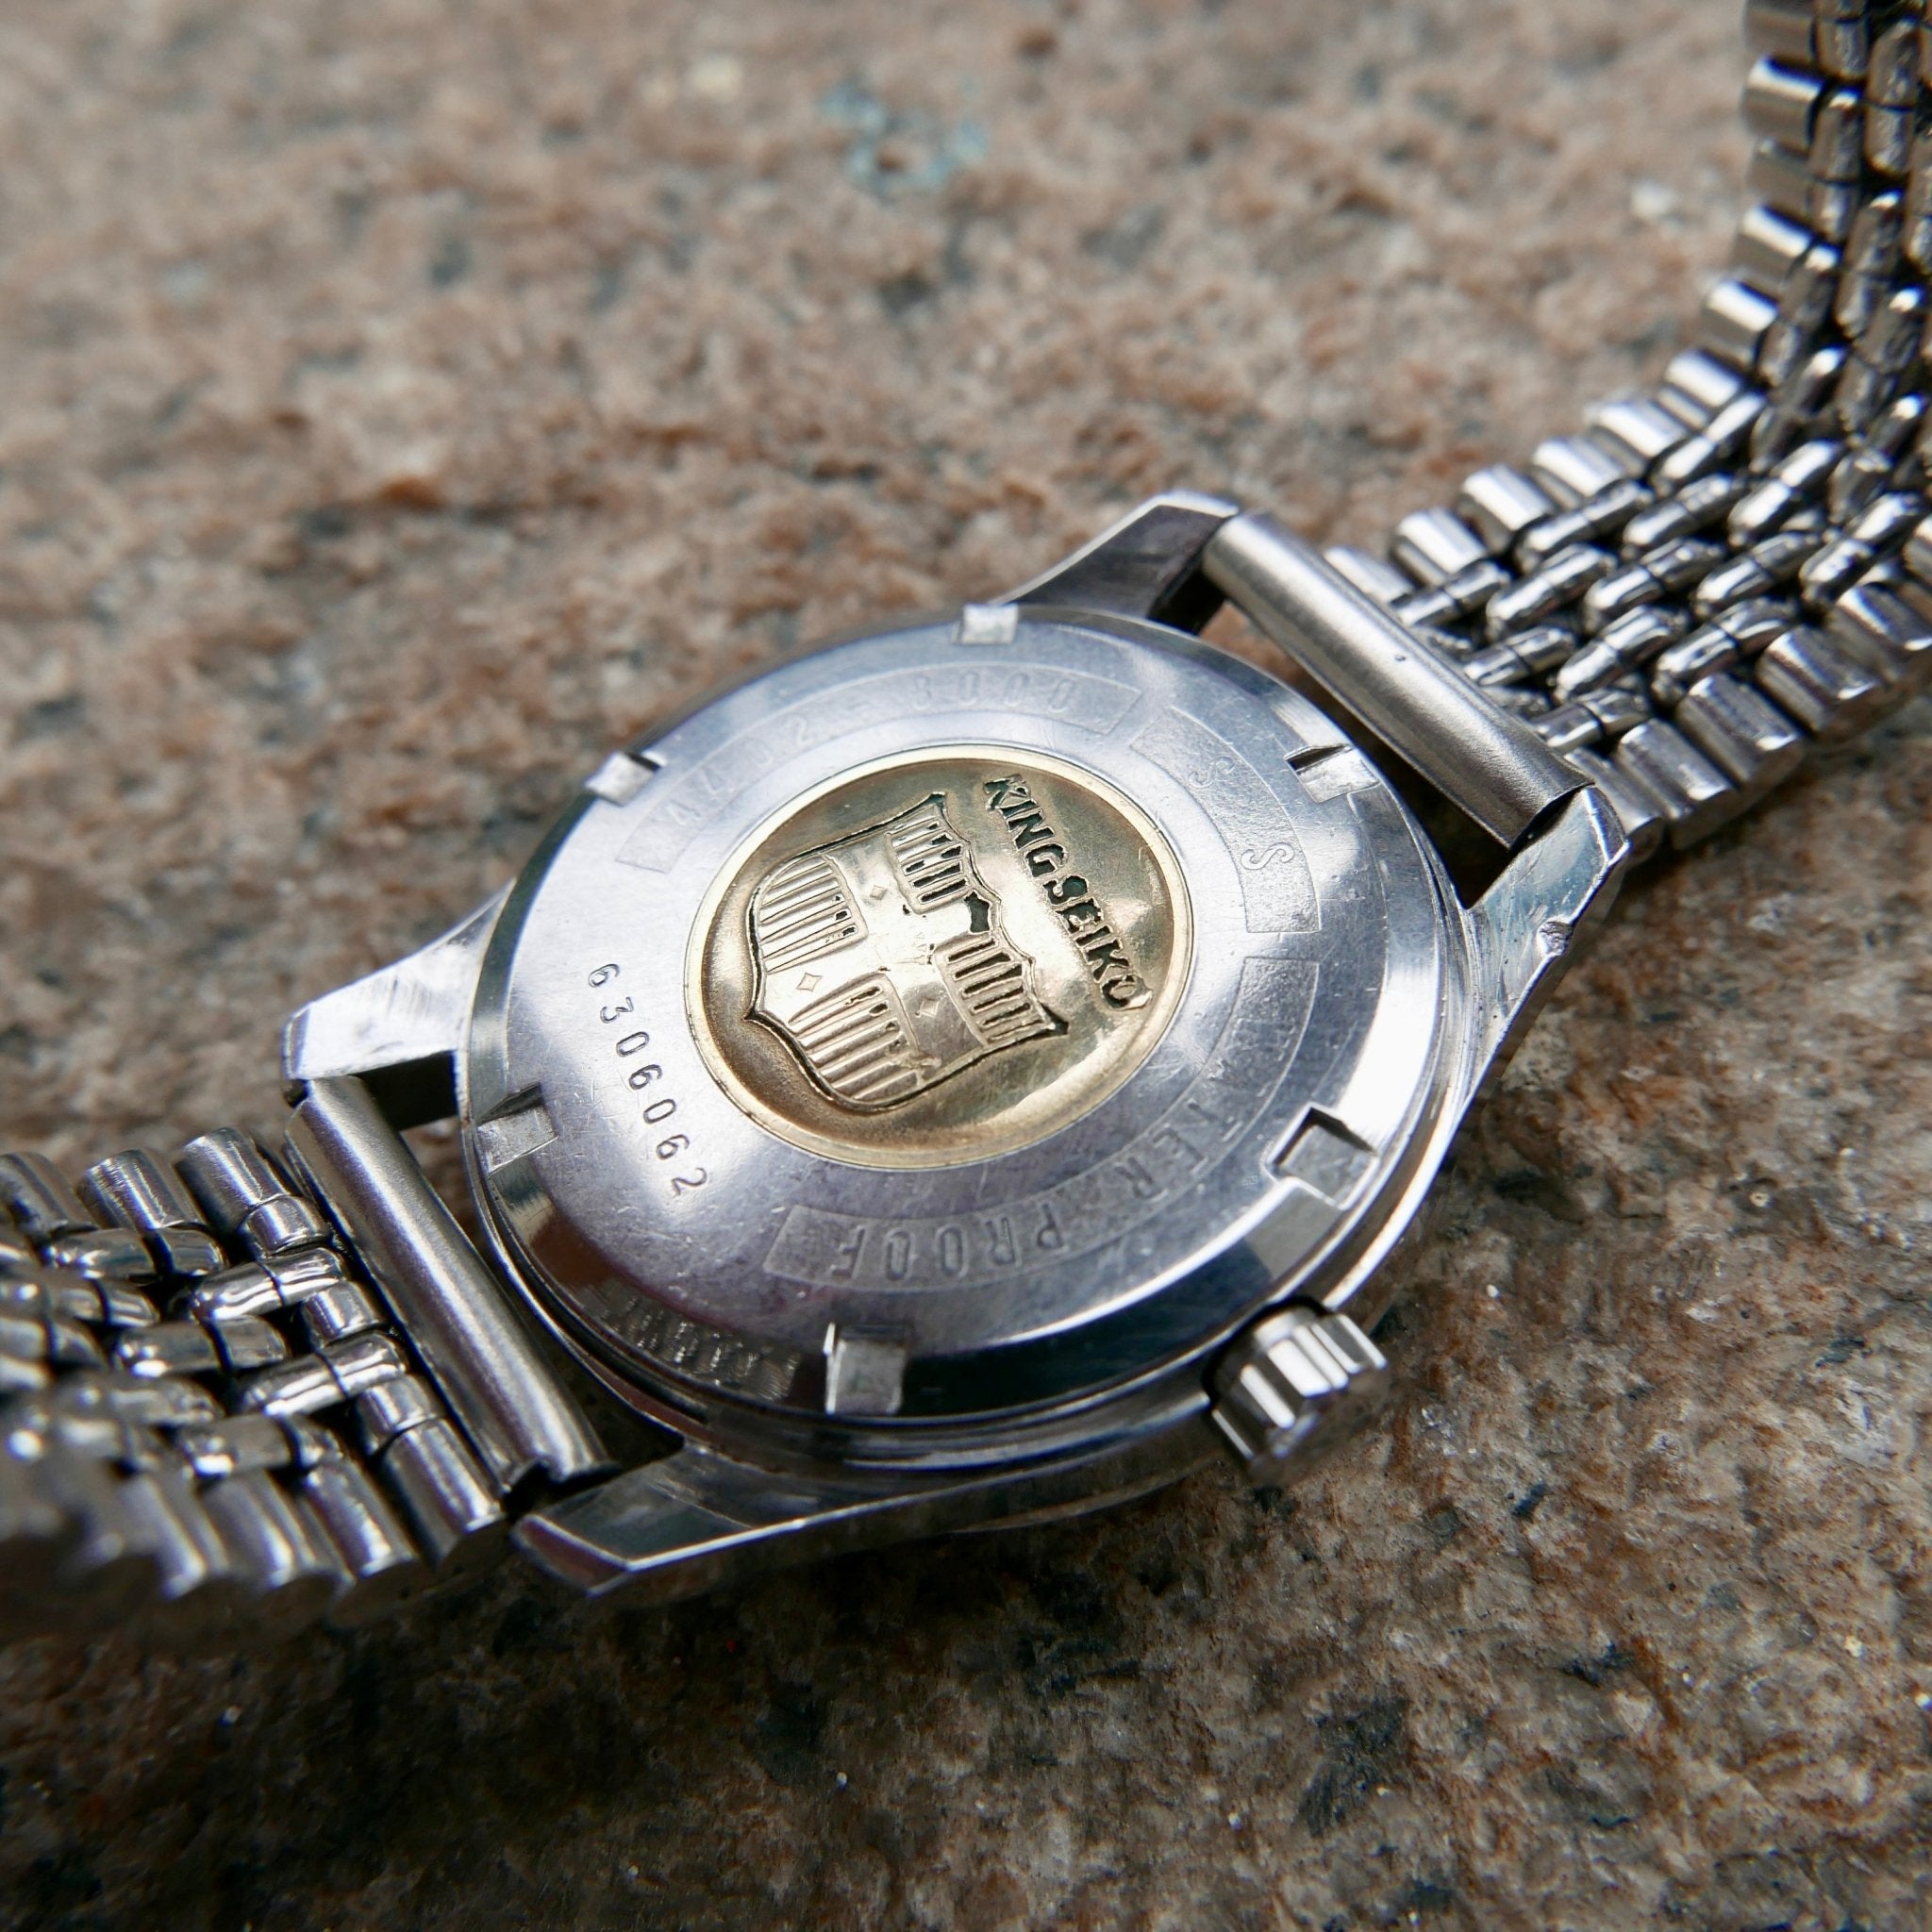 Vintage Watch | King Seiko 4402-8000R - Samurai Vintage Co.